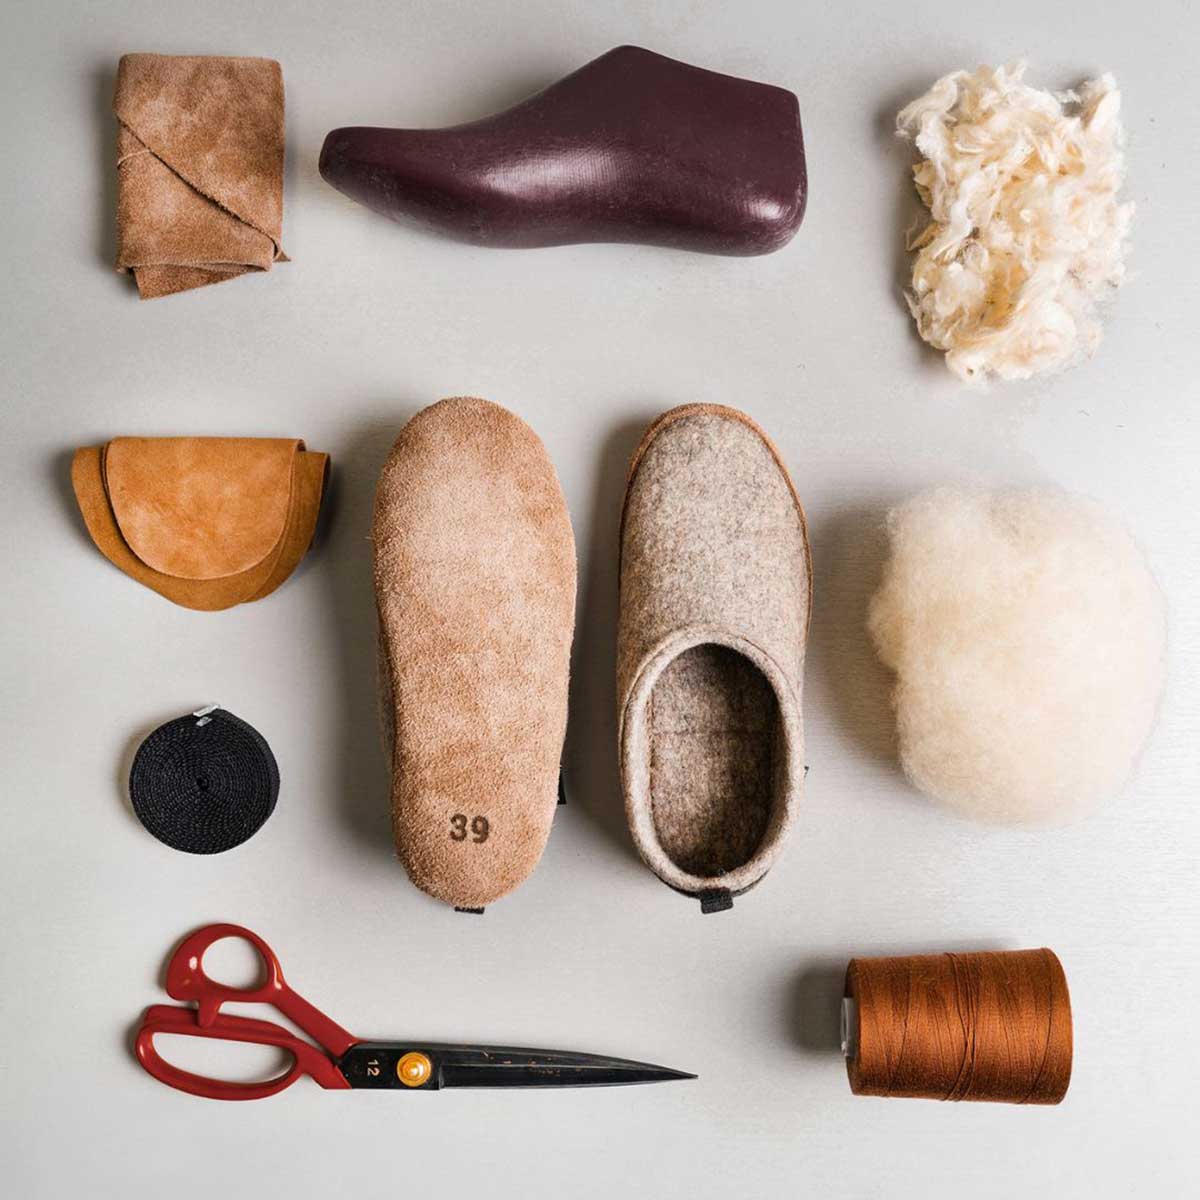 Zur Herstellung benötigt man nicht viel. Auf dem Bild zu sehen: Hausschuhe, Garn, Wolle, eine Schere, einen Schuhleisten und Leder.